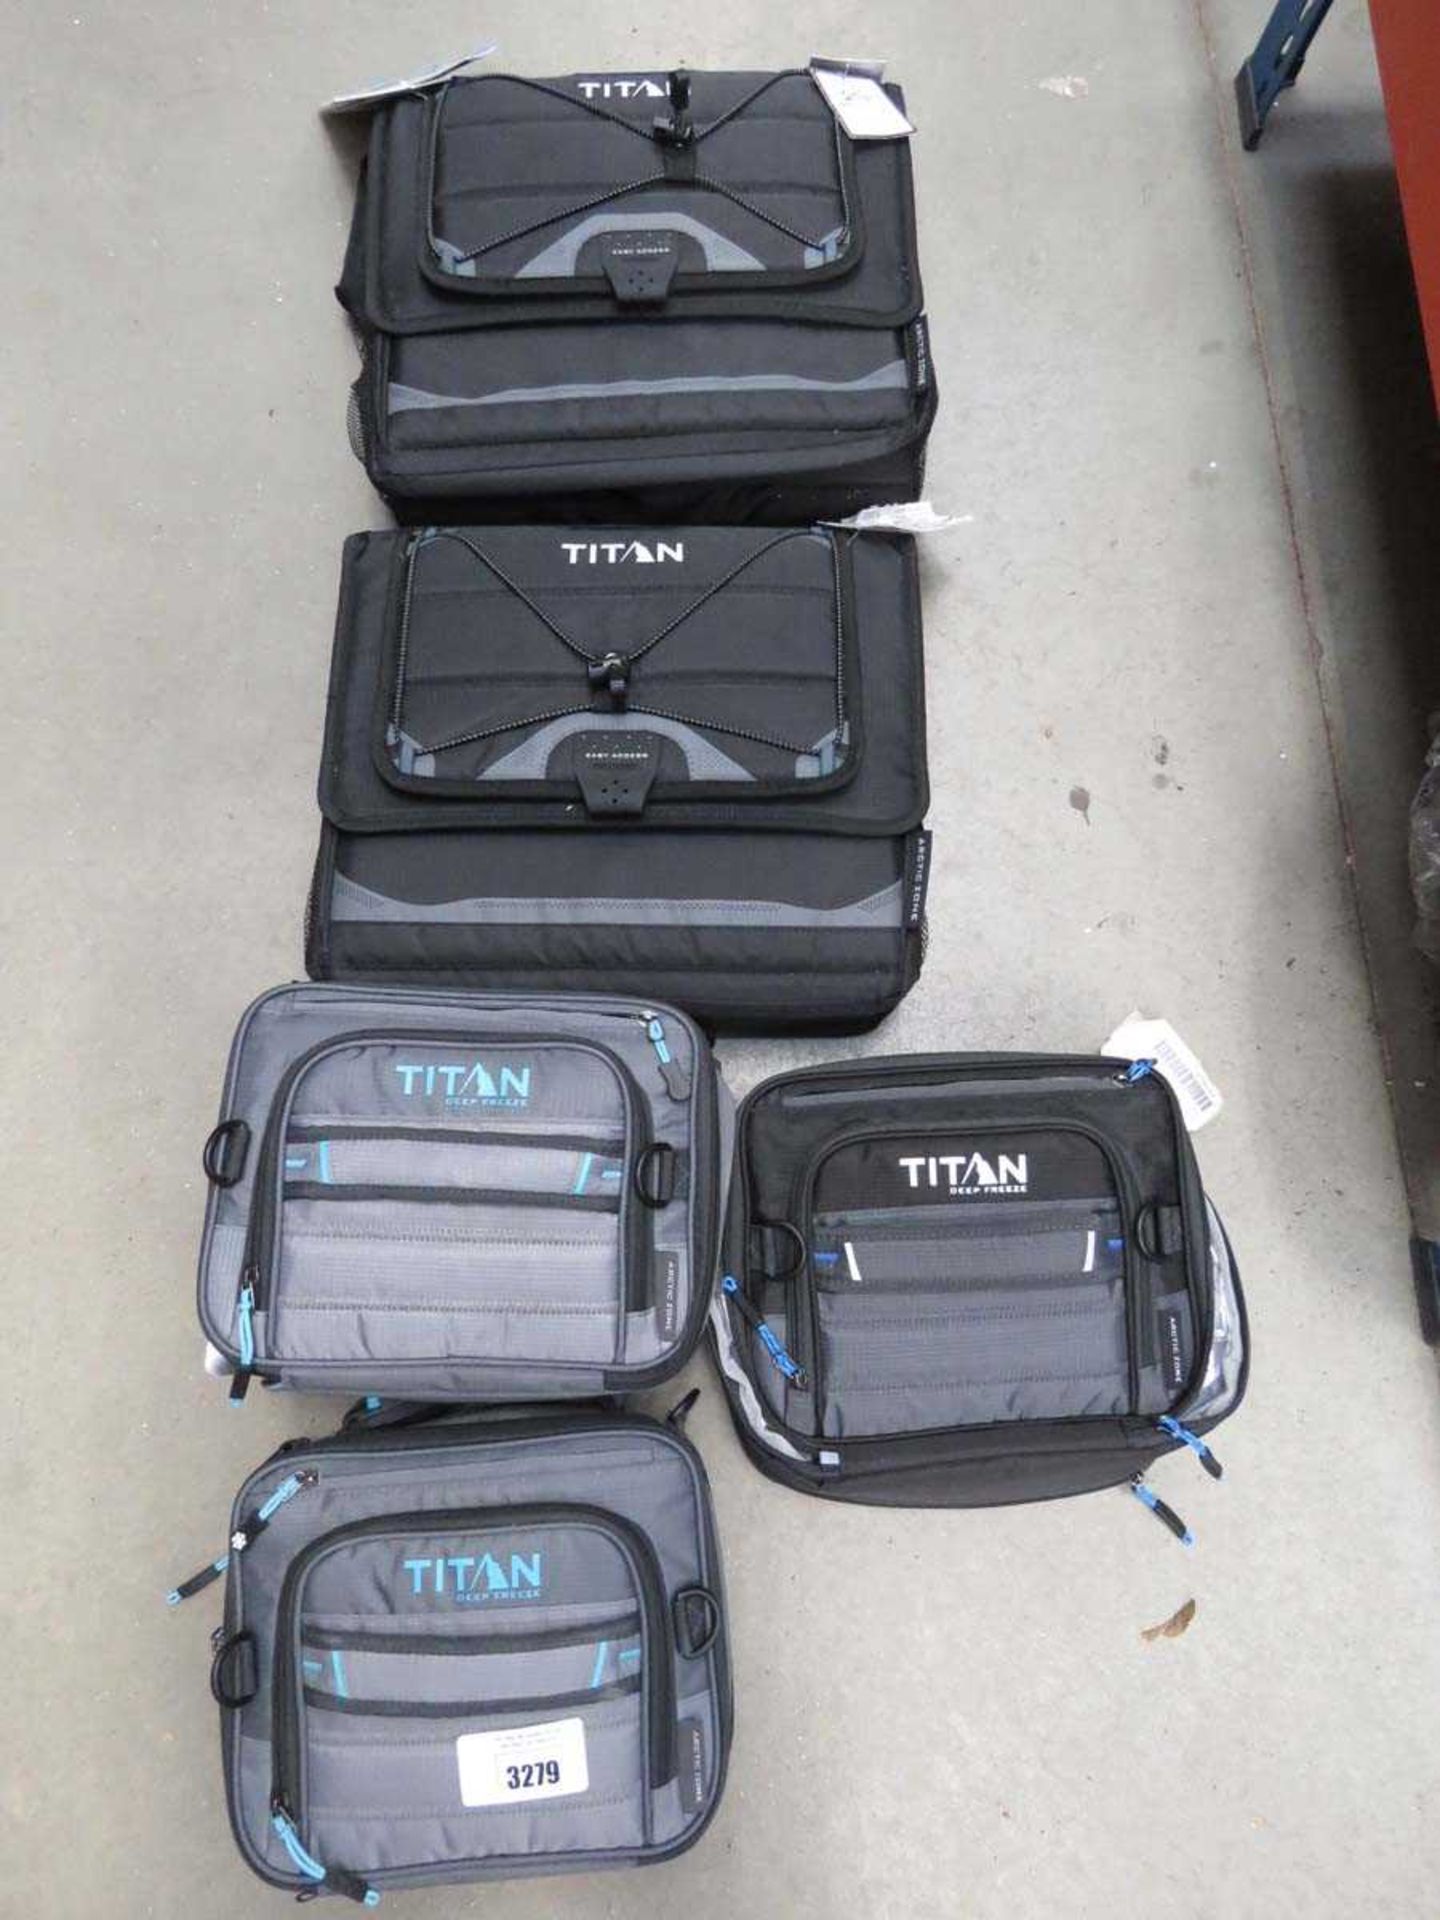 +VAT Three Titan lunch boxes plus a Titan cooler bag